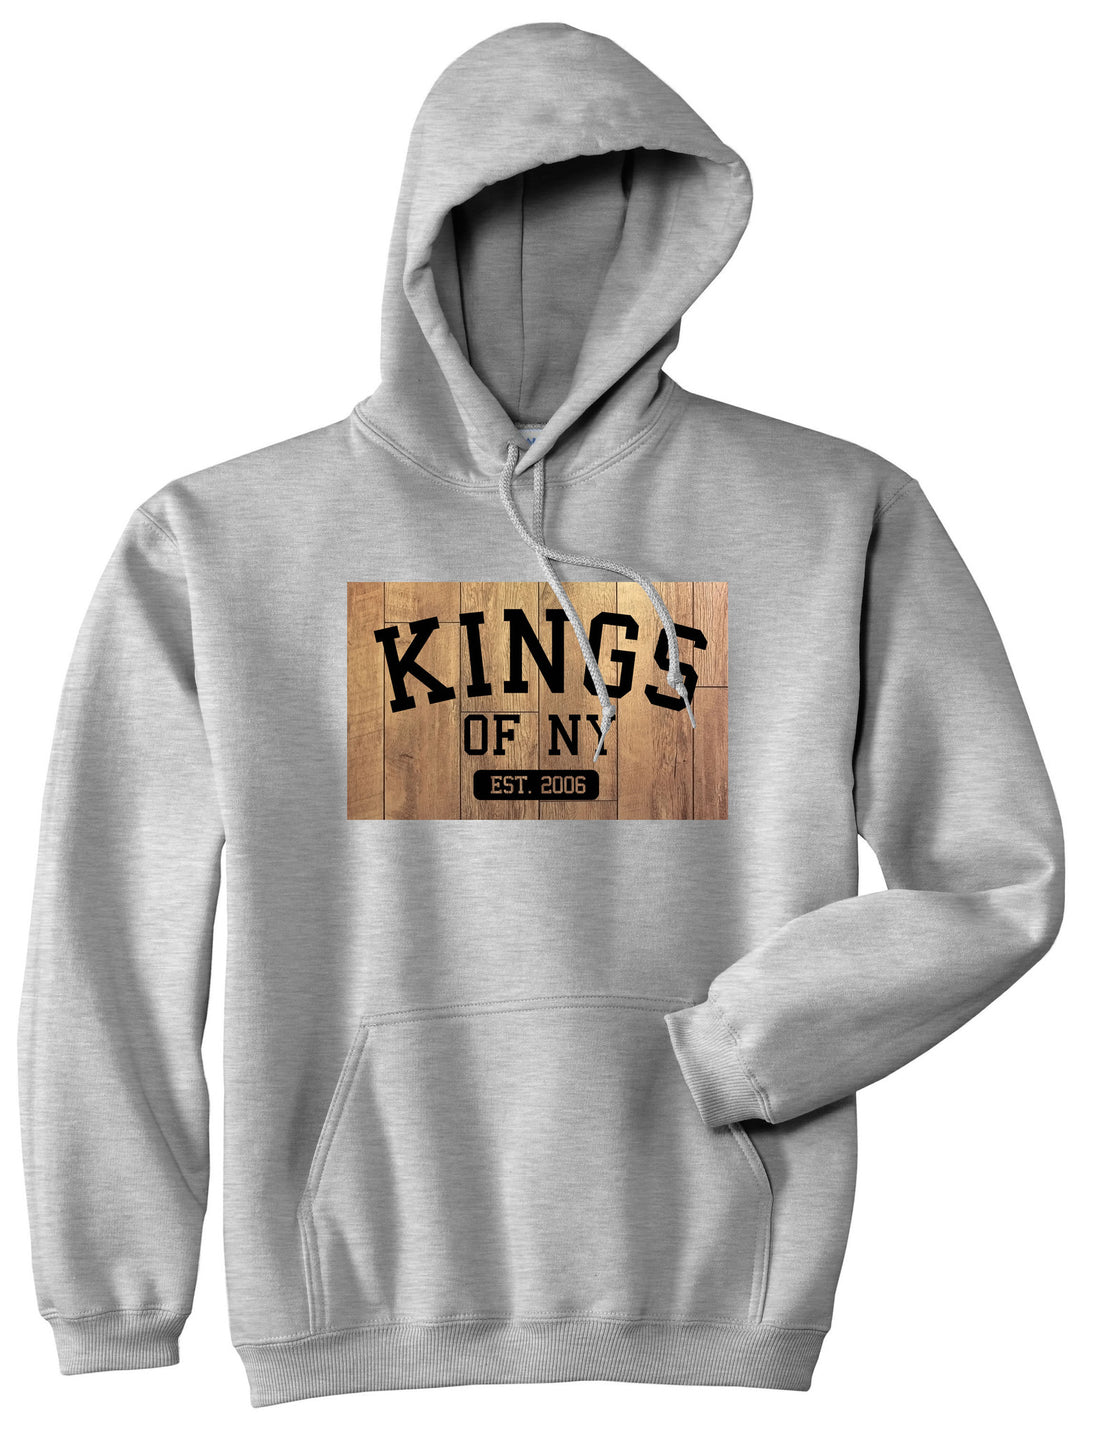 Hardwood Basketball Logo Boys Kids Pullover Hoodie Hoody in Grey by Kings Of NY